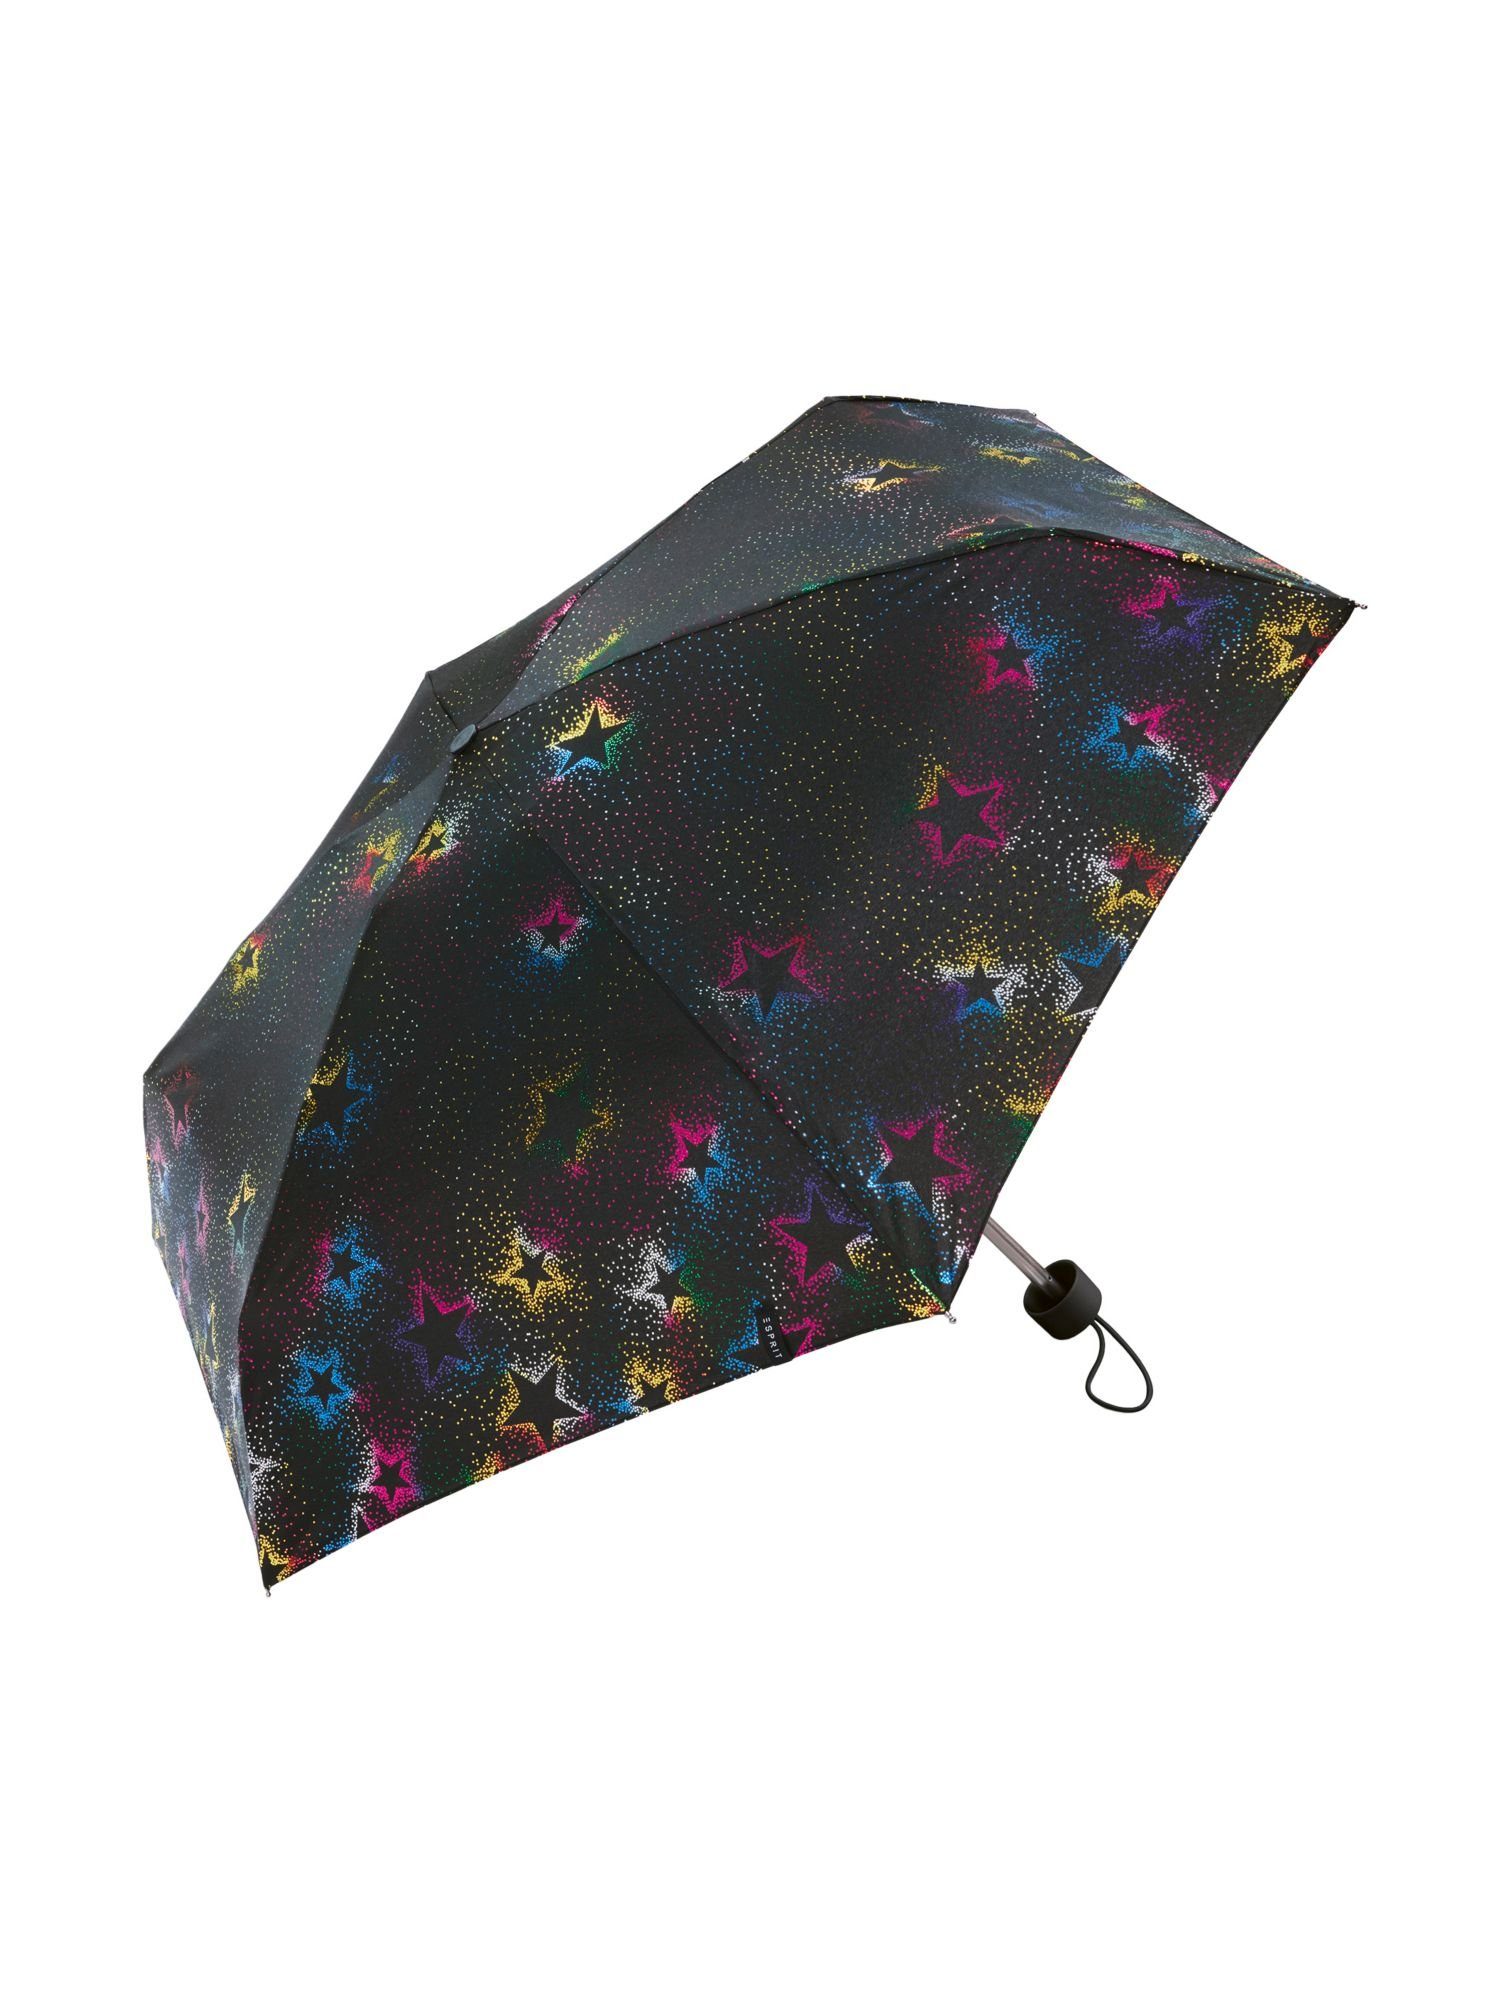 Esprit Taschenregenschirm Pocket umbrella | Taschenschirme